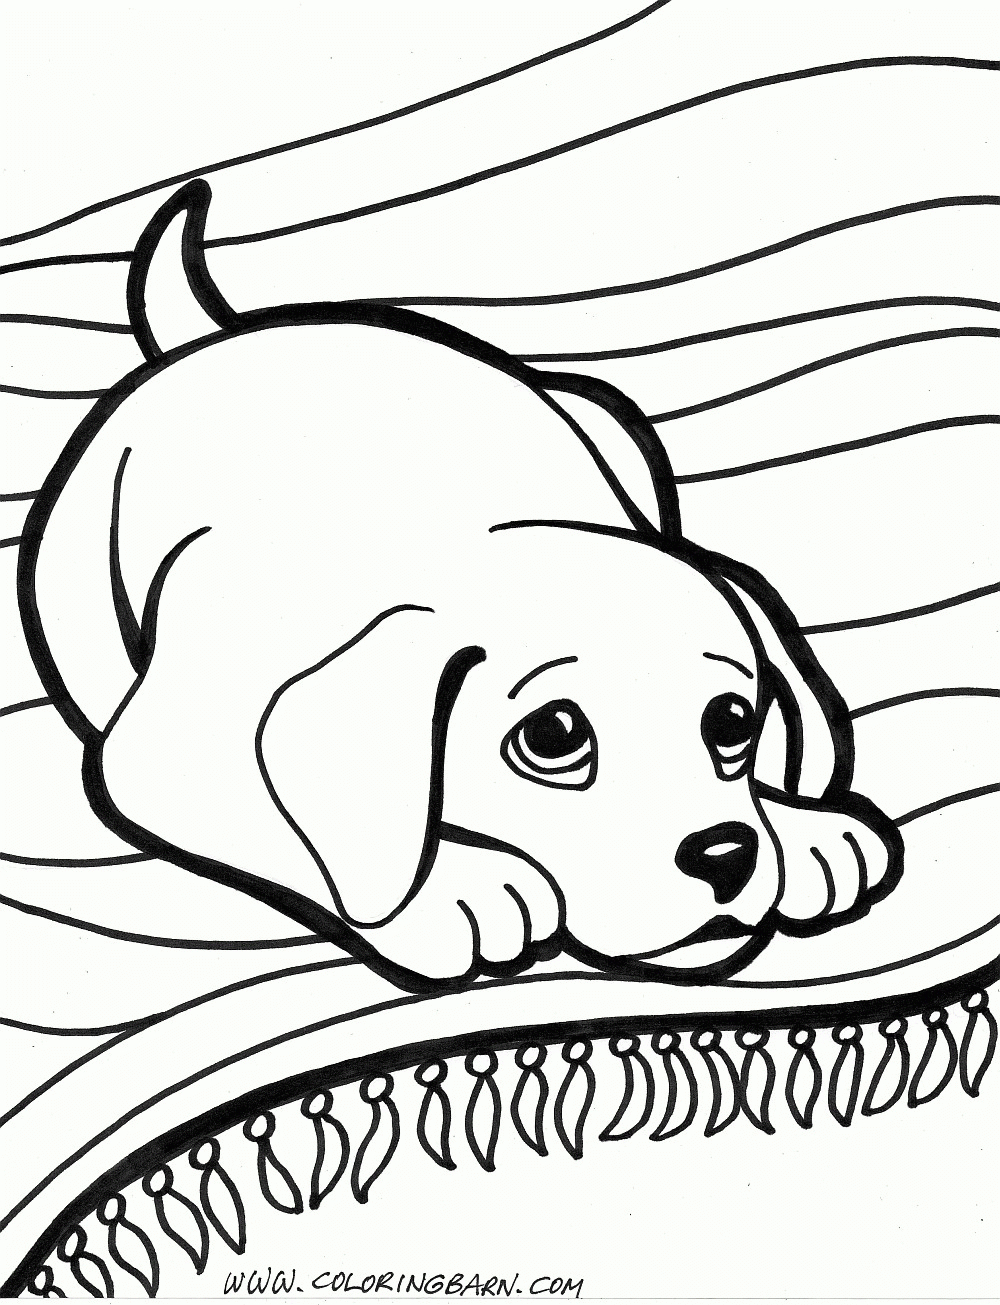 Puppy Coloring Pages Puppy Coloring Pages Dog Coloring Pages Free - Free Printable Dog Coloring Pages